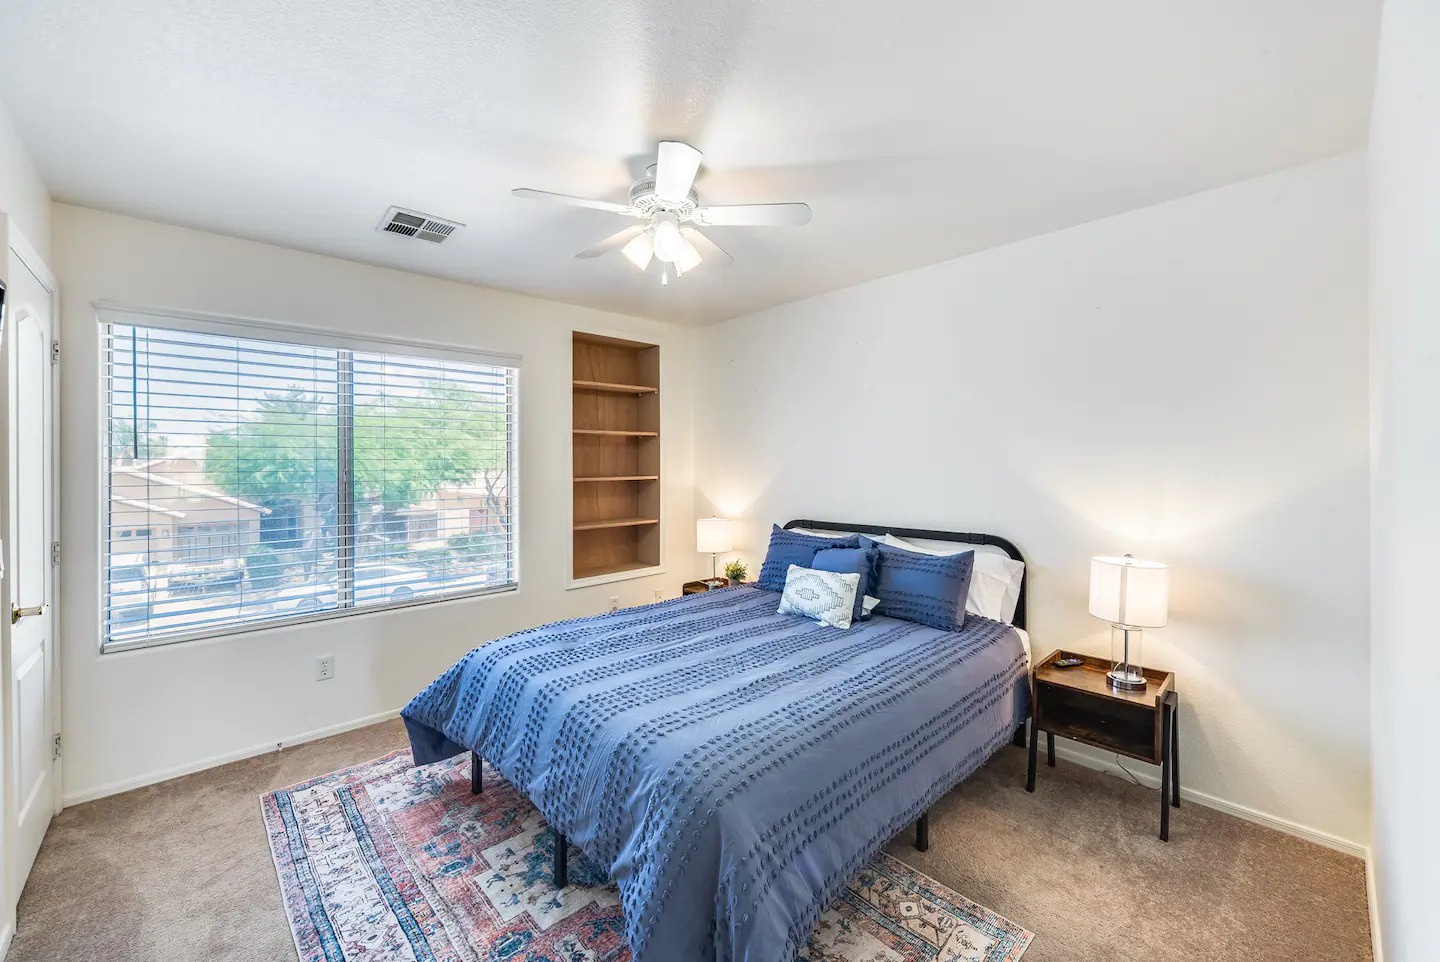 Peoria Vacation Rentals, Cherry Hills - Bedroom 3 with queen bed